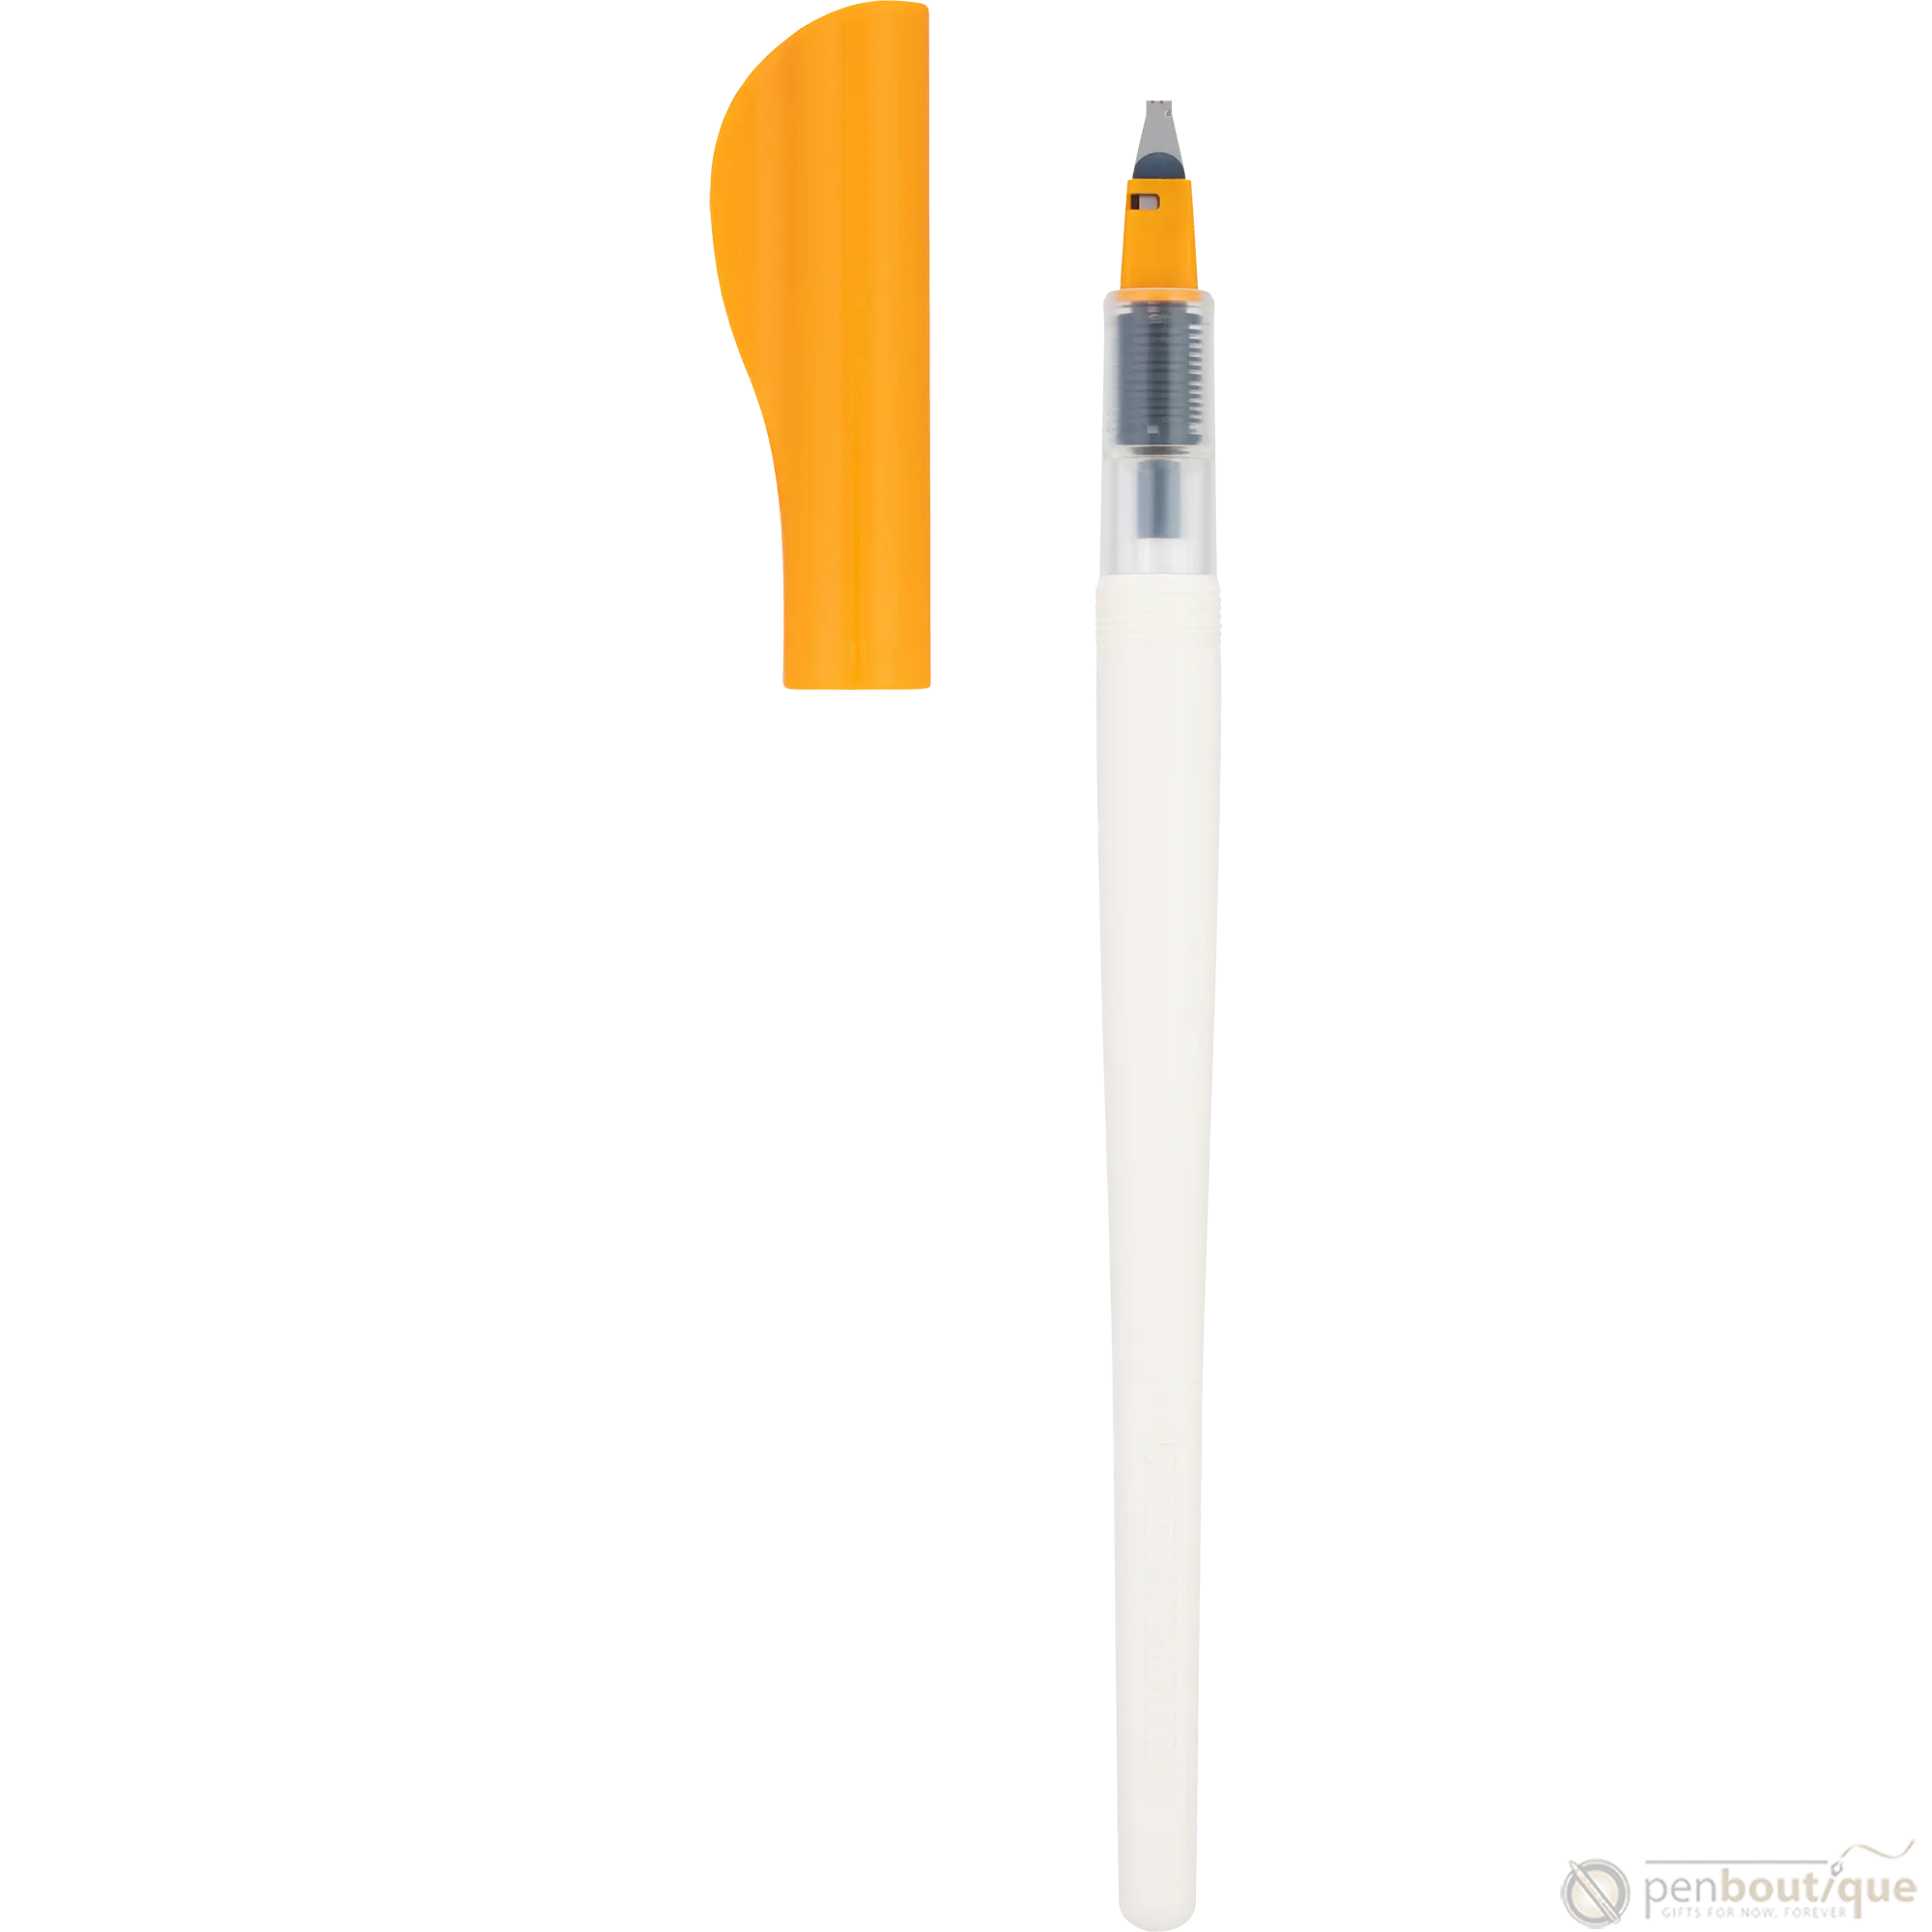 Pilot Parallel Fountain Pen - 2.4mm-Pen Boutique Ltd